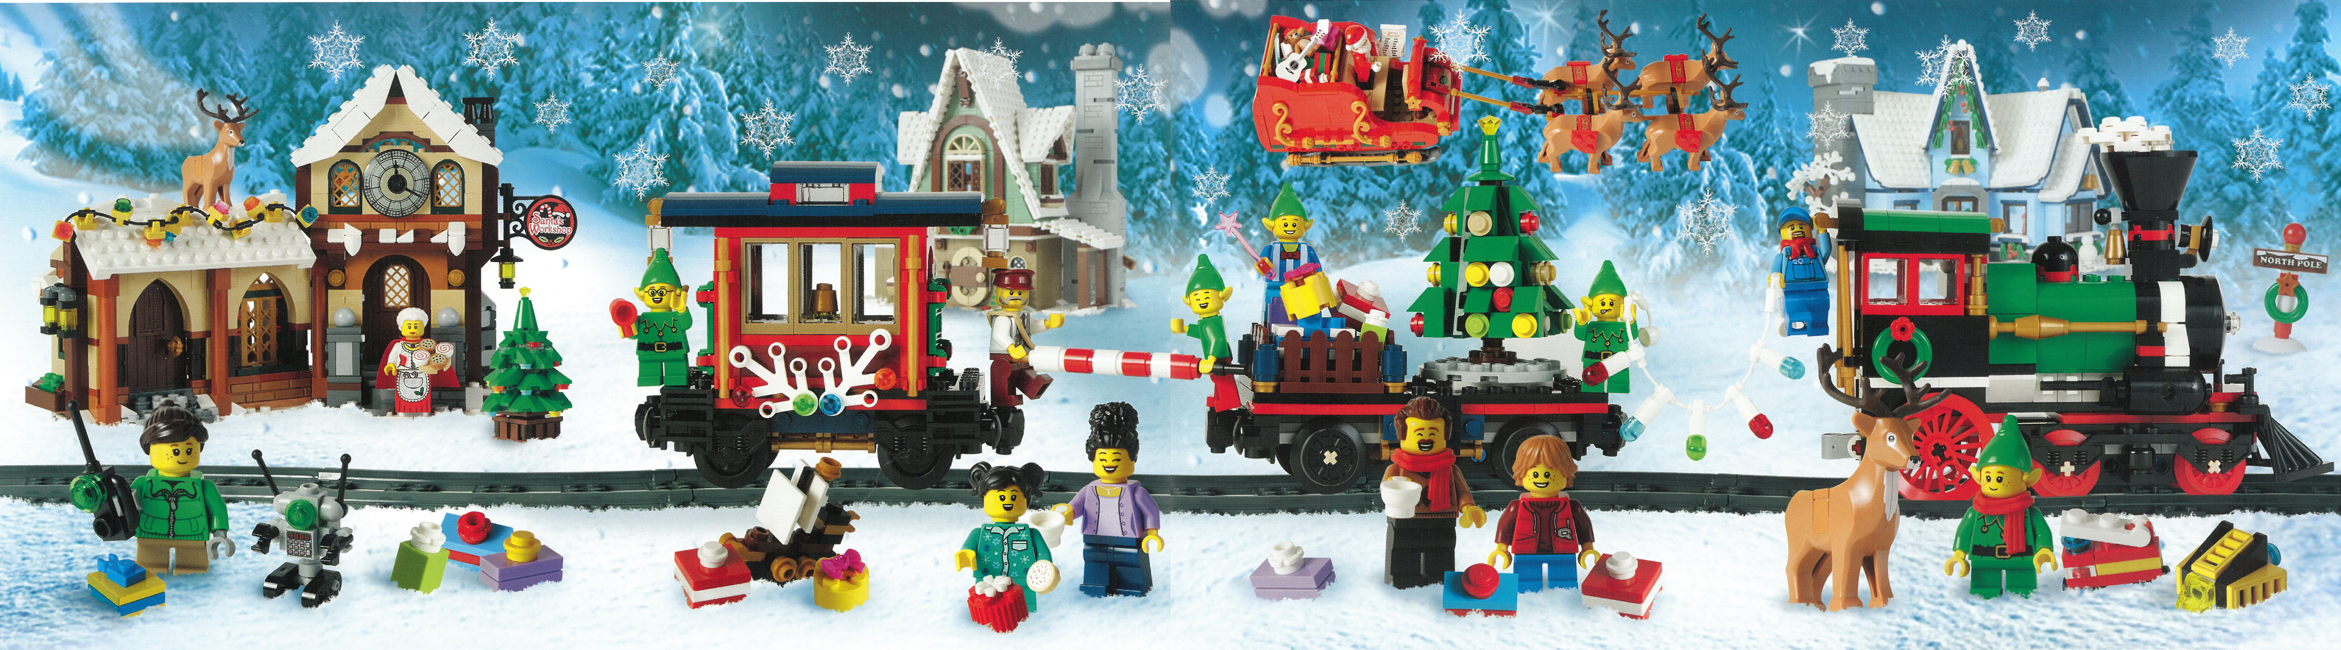 LEGO - Christmas Train Puzzle - 4 x 100-Piece puzzle (4013116-221335)